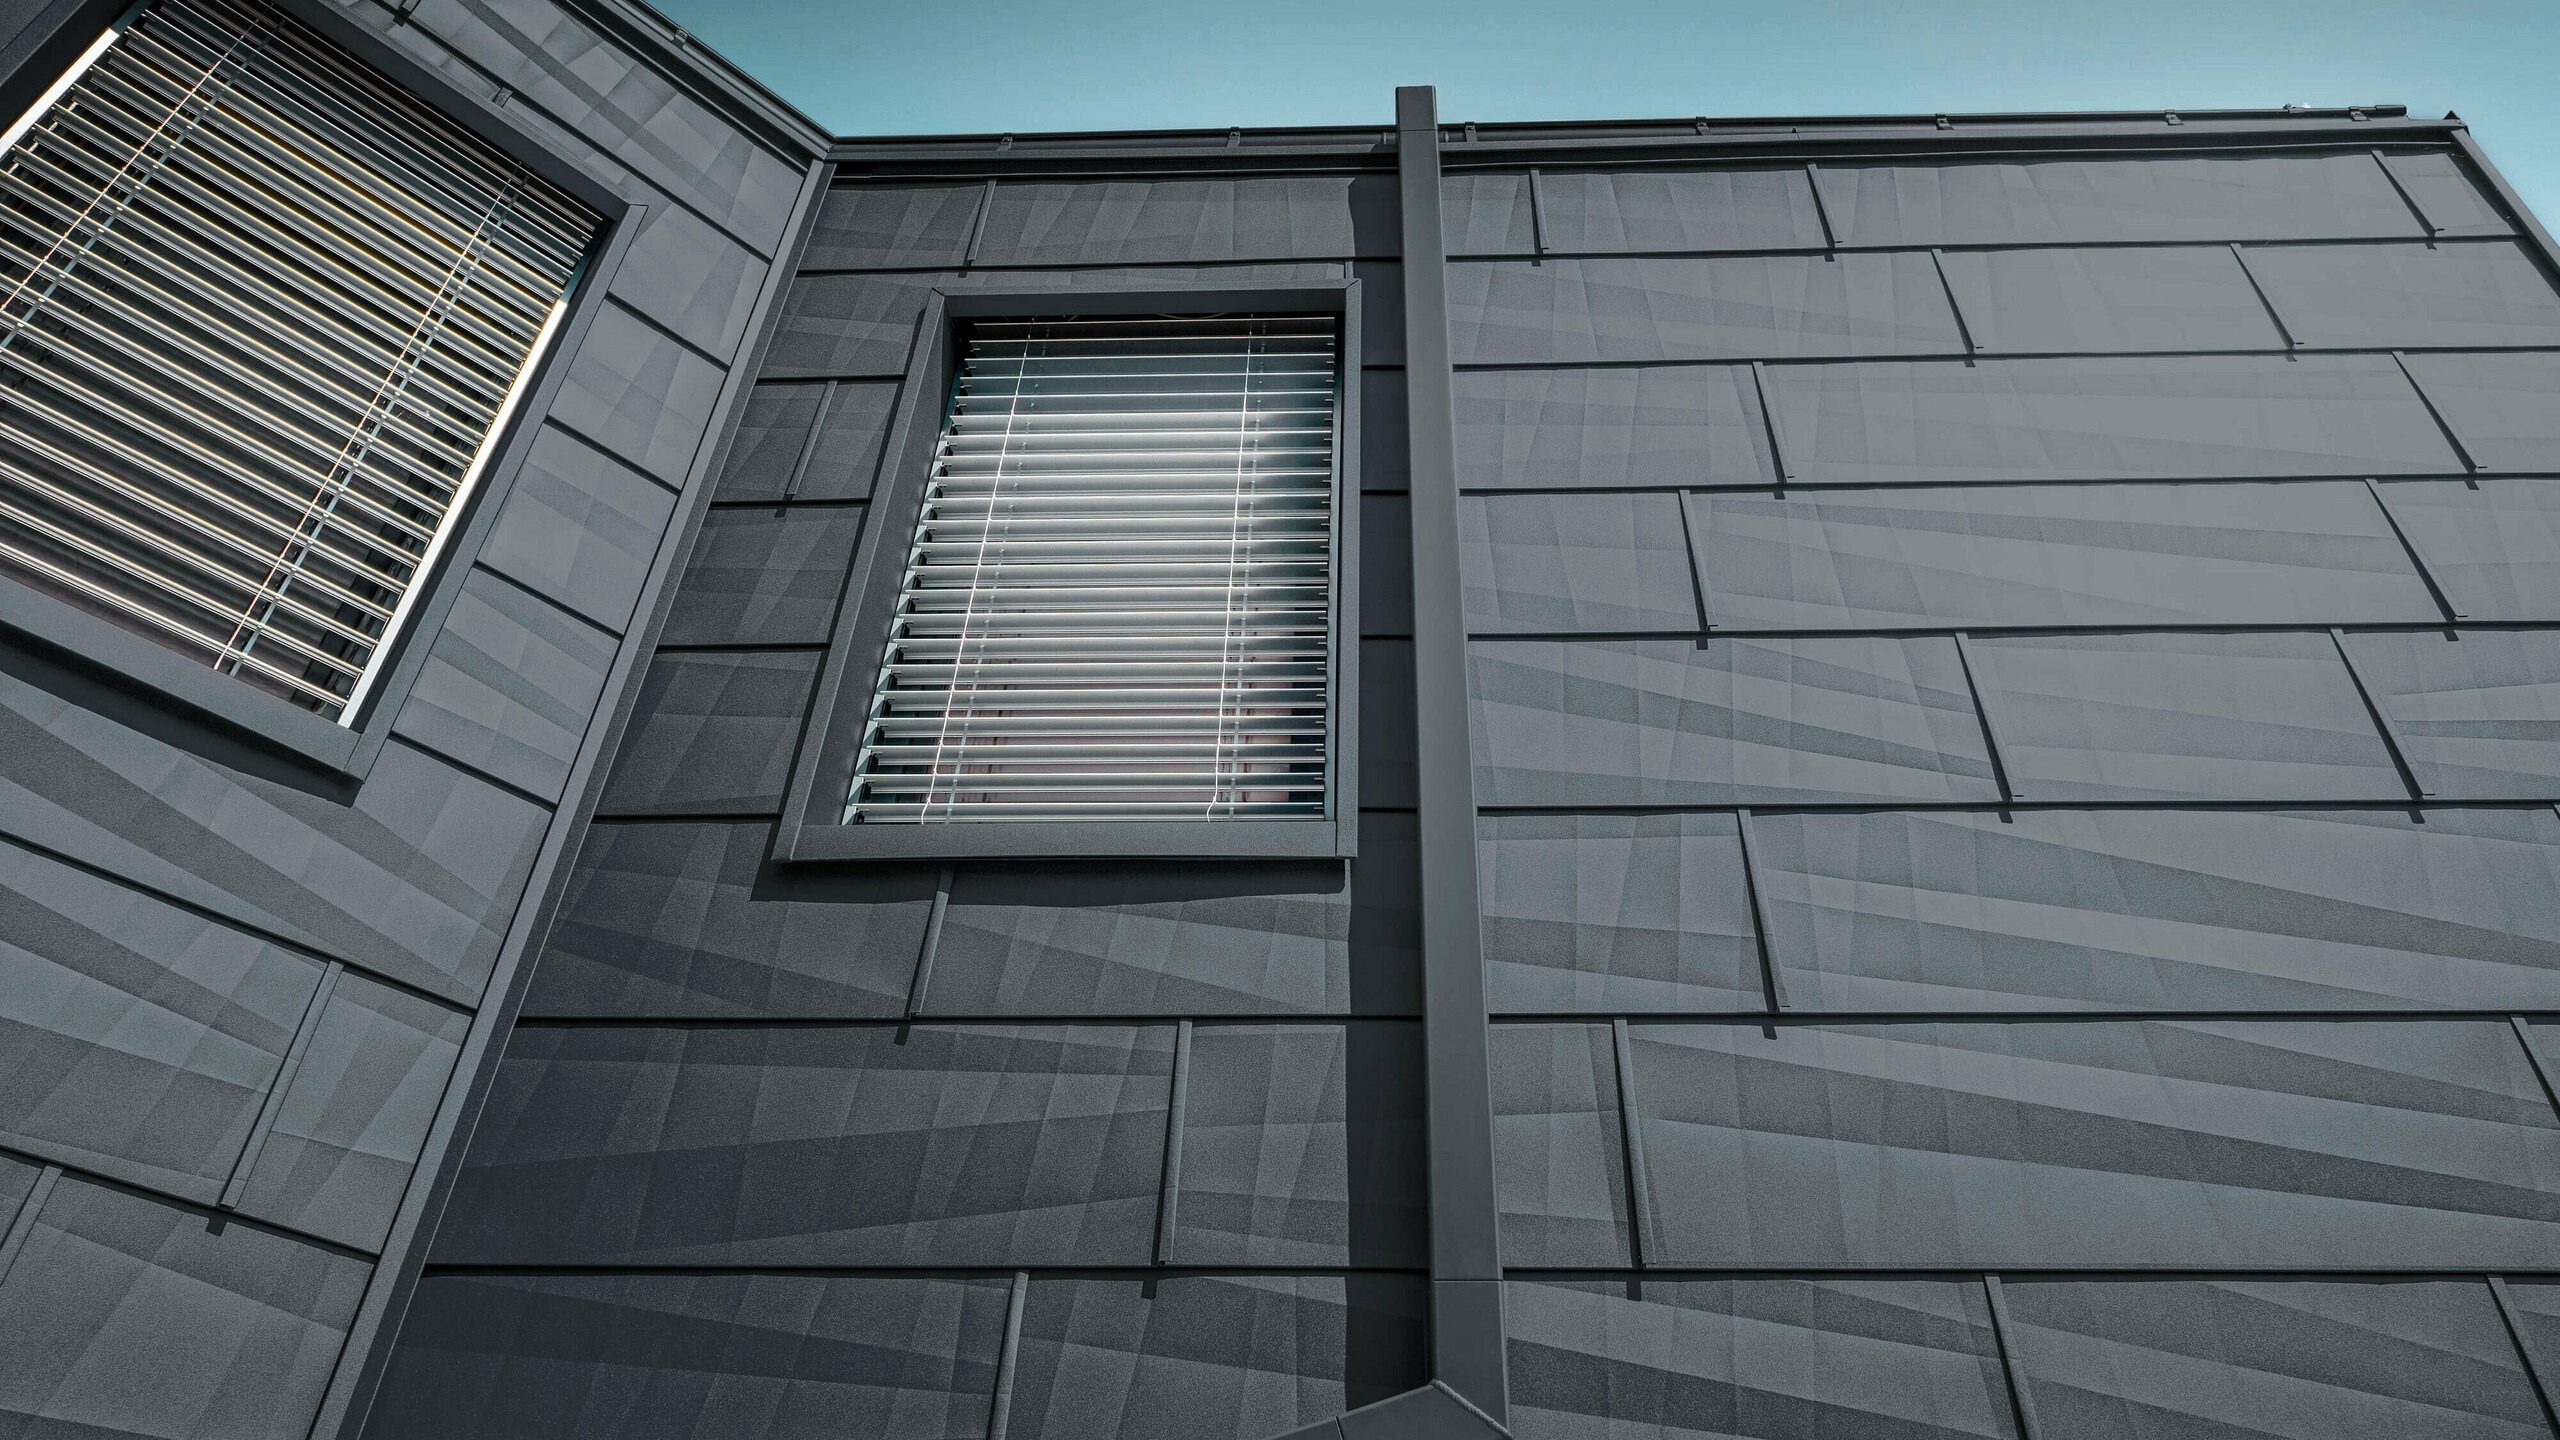 Fasad täckt med PREFA fasadpanel FX.12 i antracit, aluminiumfasadpaneler med det rektangulära stupröret, kvadratröret, i antracit från PREFA.